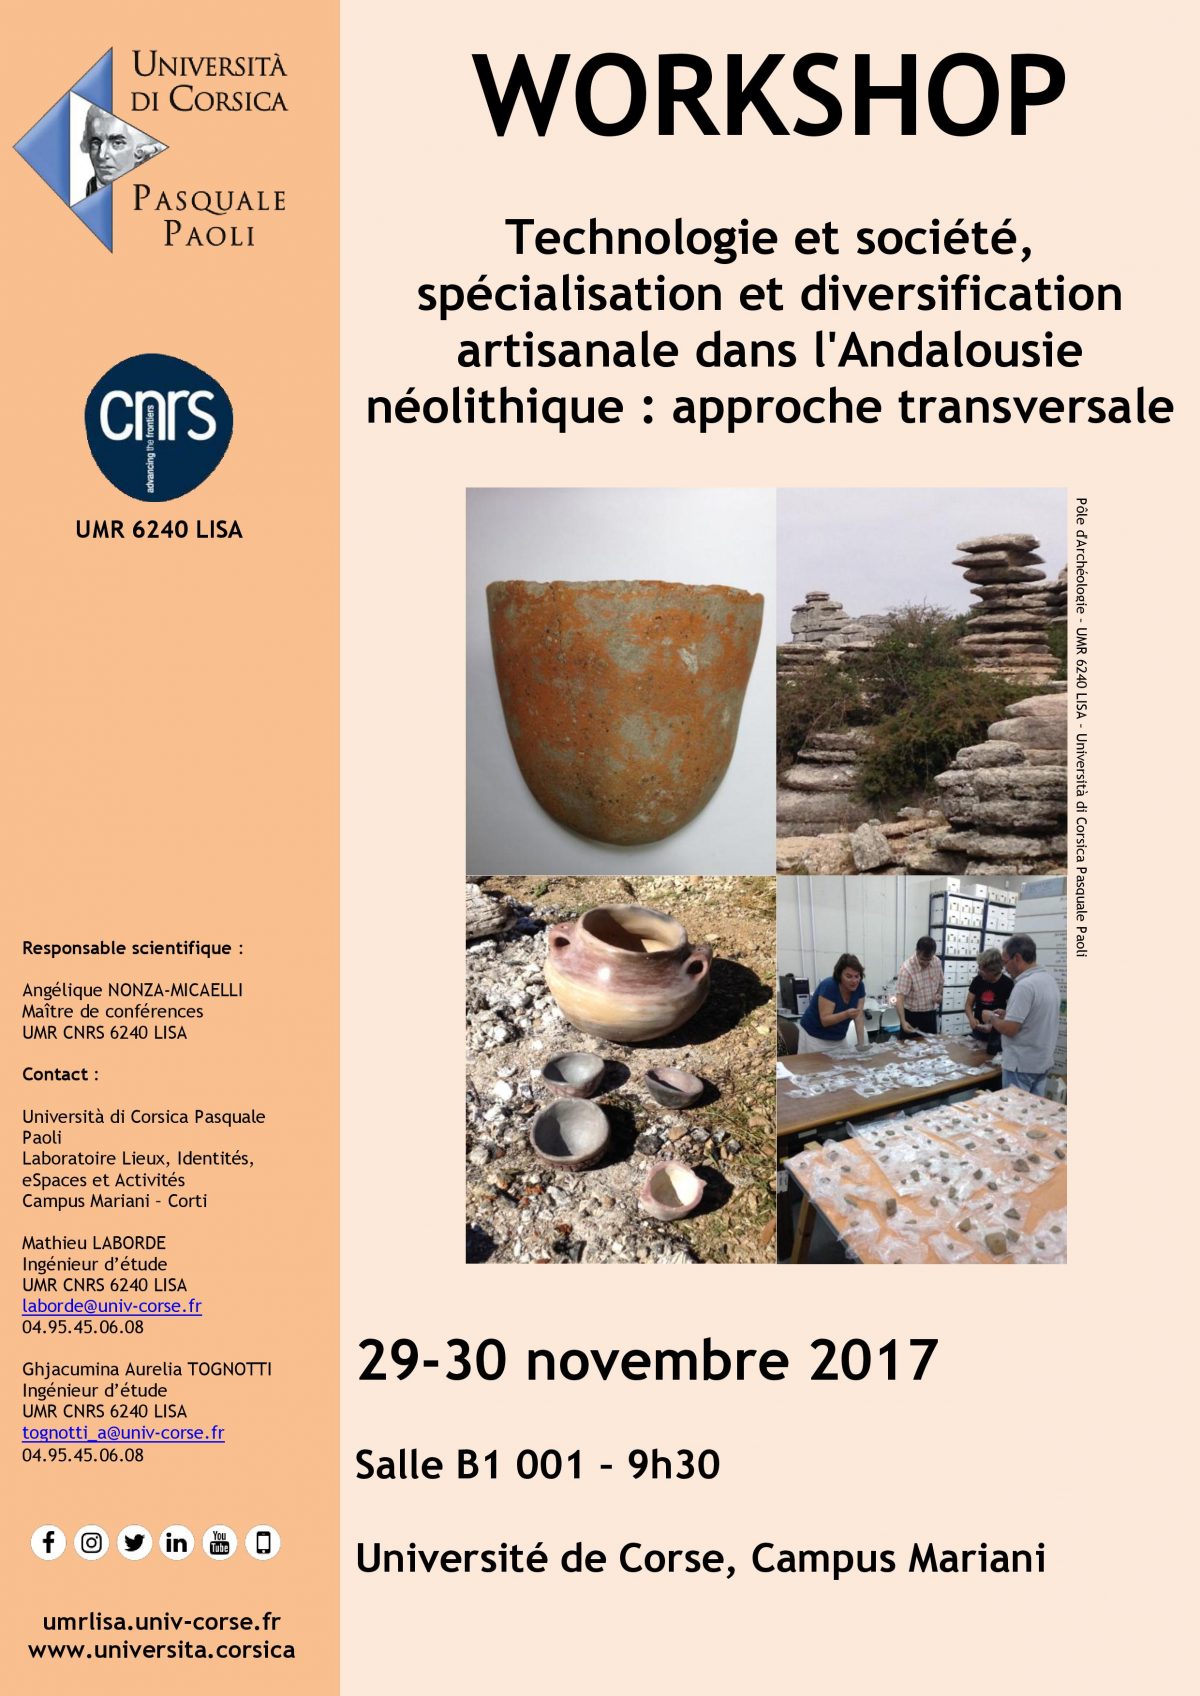 Workshop « Technologie et société, spécialisation et diversification artisanale dans l’Andalousie néolithique : approche transversale »